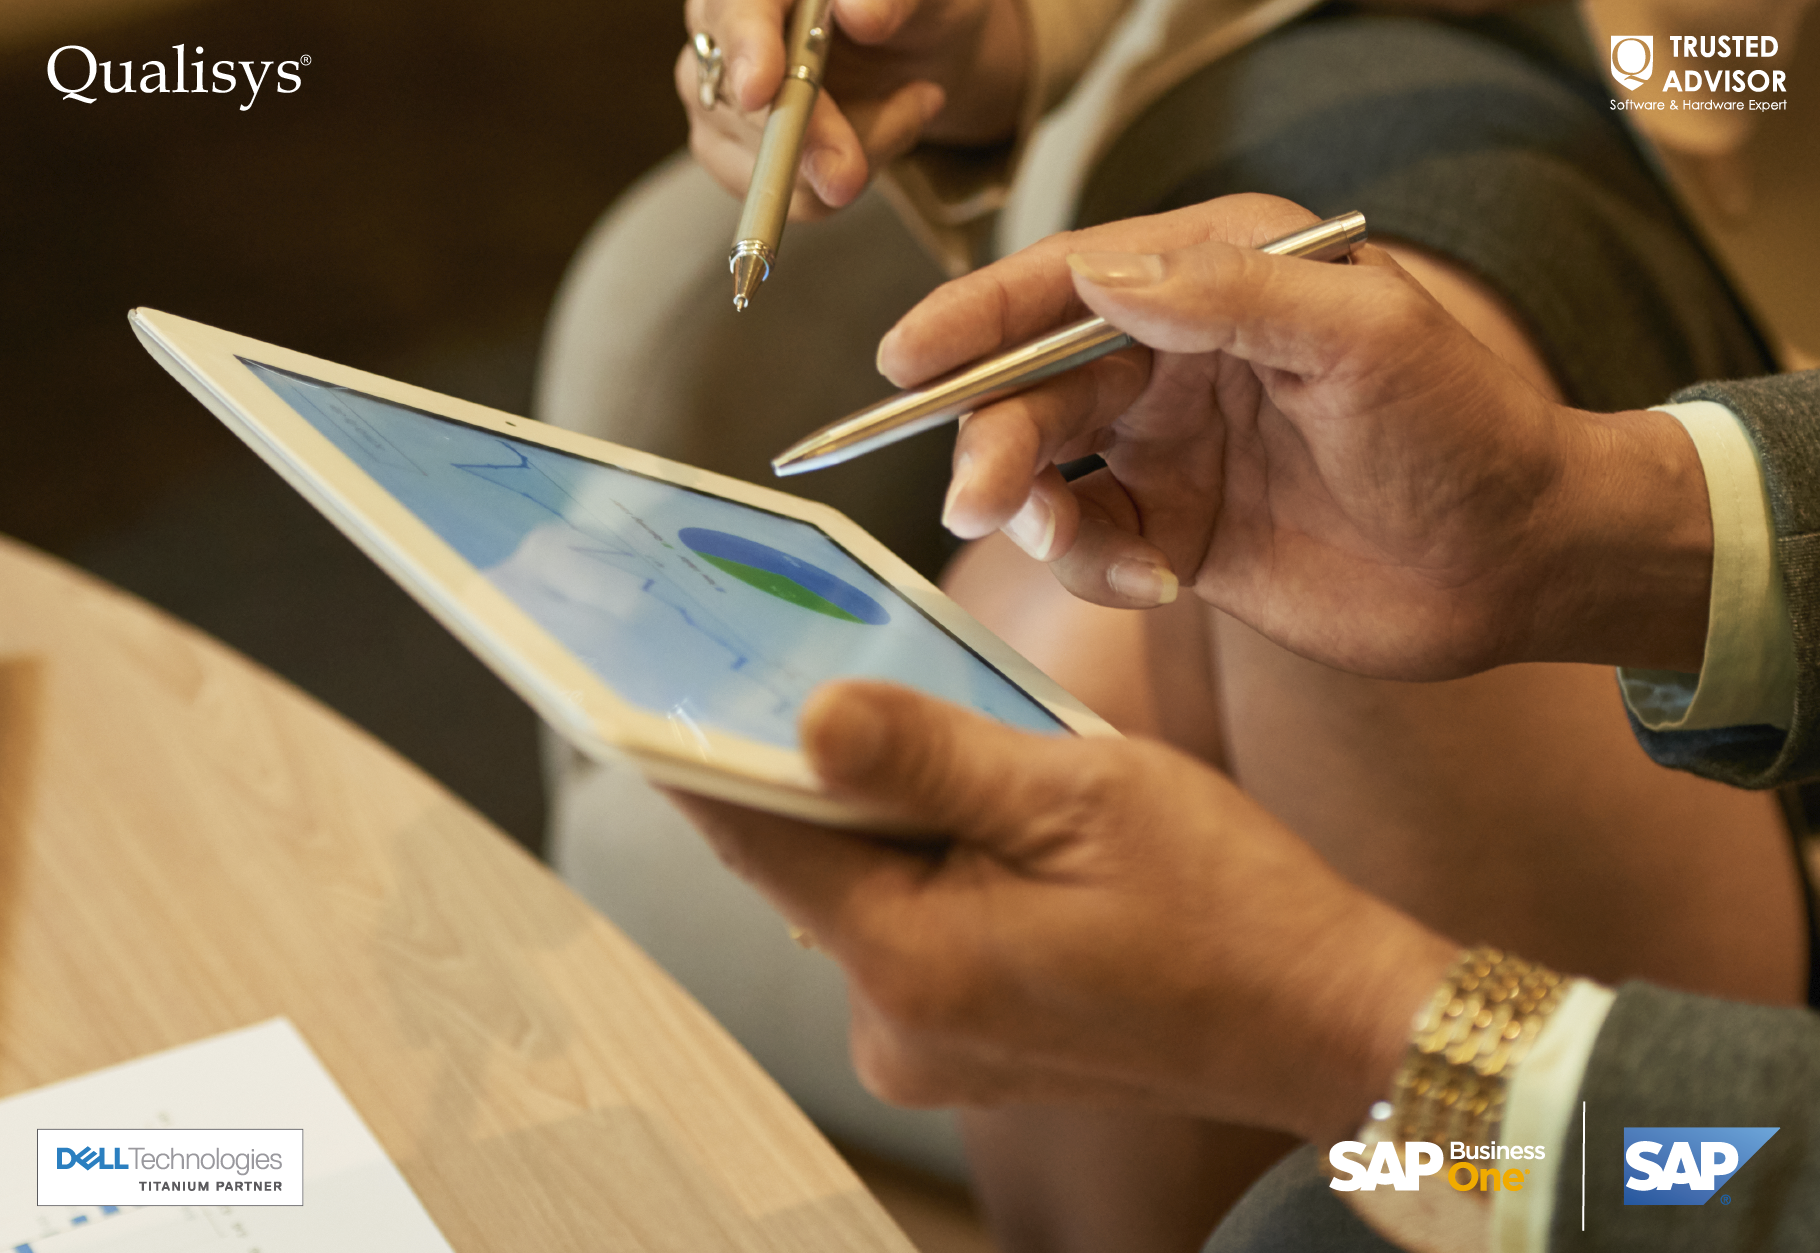 SAP Business One diseñado especialmente para empresas en crecimiento - Image